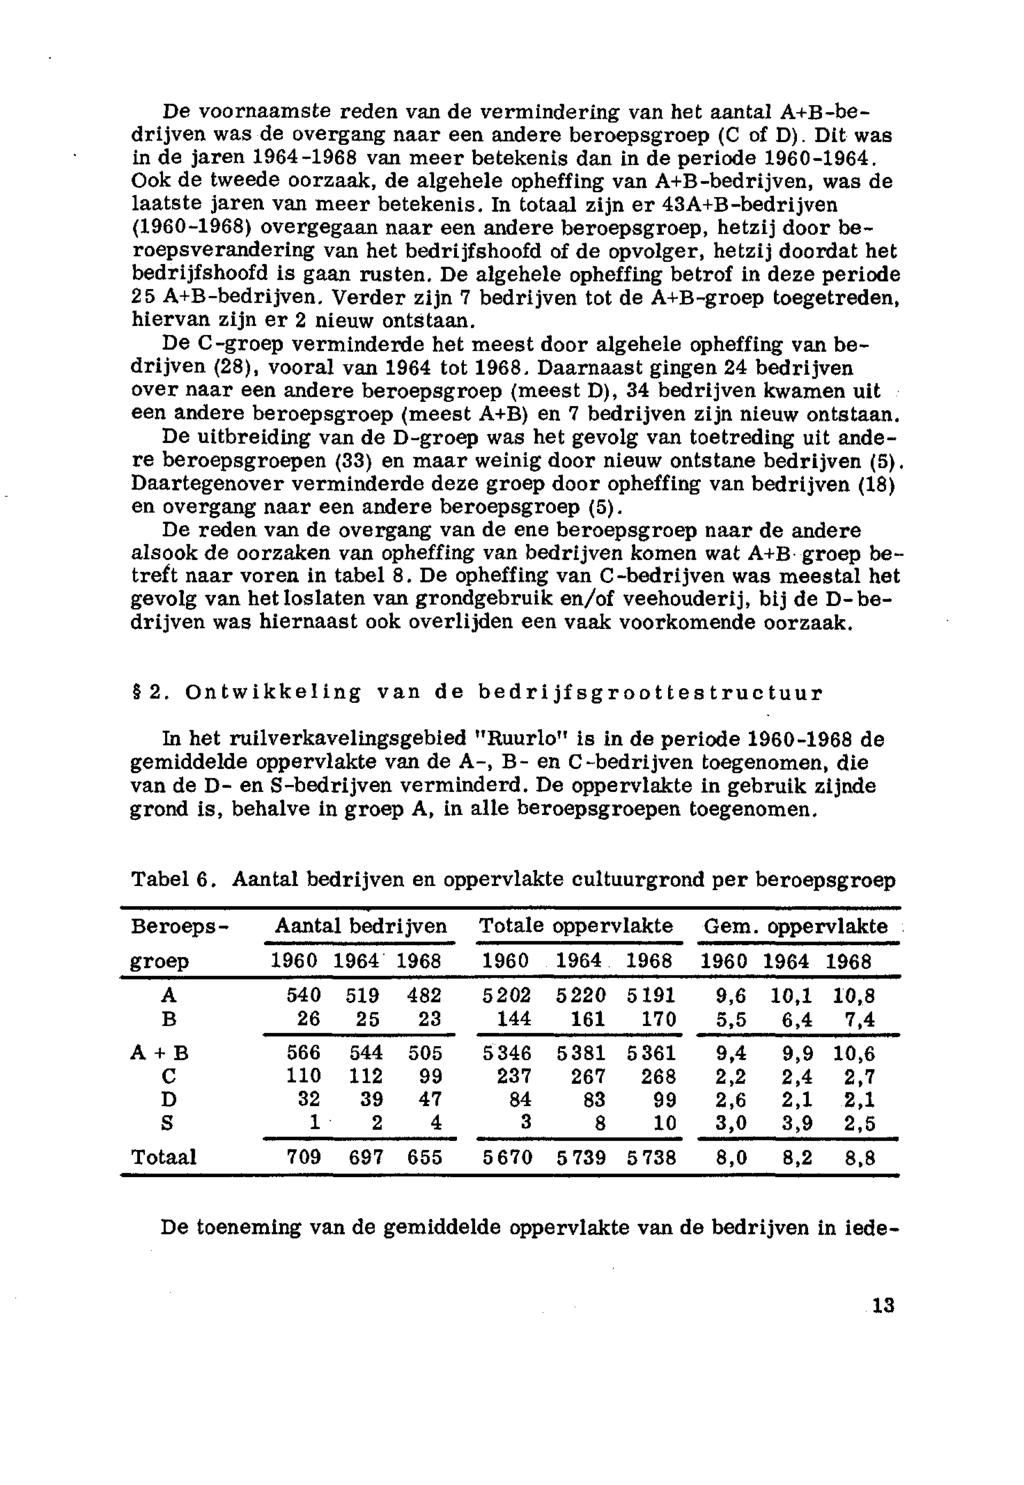 De vrnaamste reden van de vermindering van het aantal A+B-bedrijven was de vergang naar een andere berepsgrep (C f D). Dit was in de jaren 964-968 van meer betekenis dan in de peride 960-964.